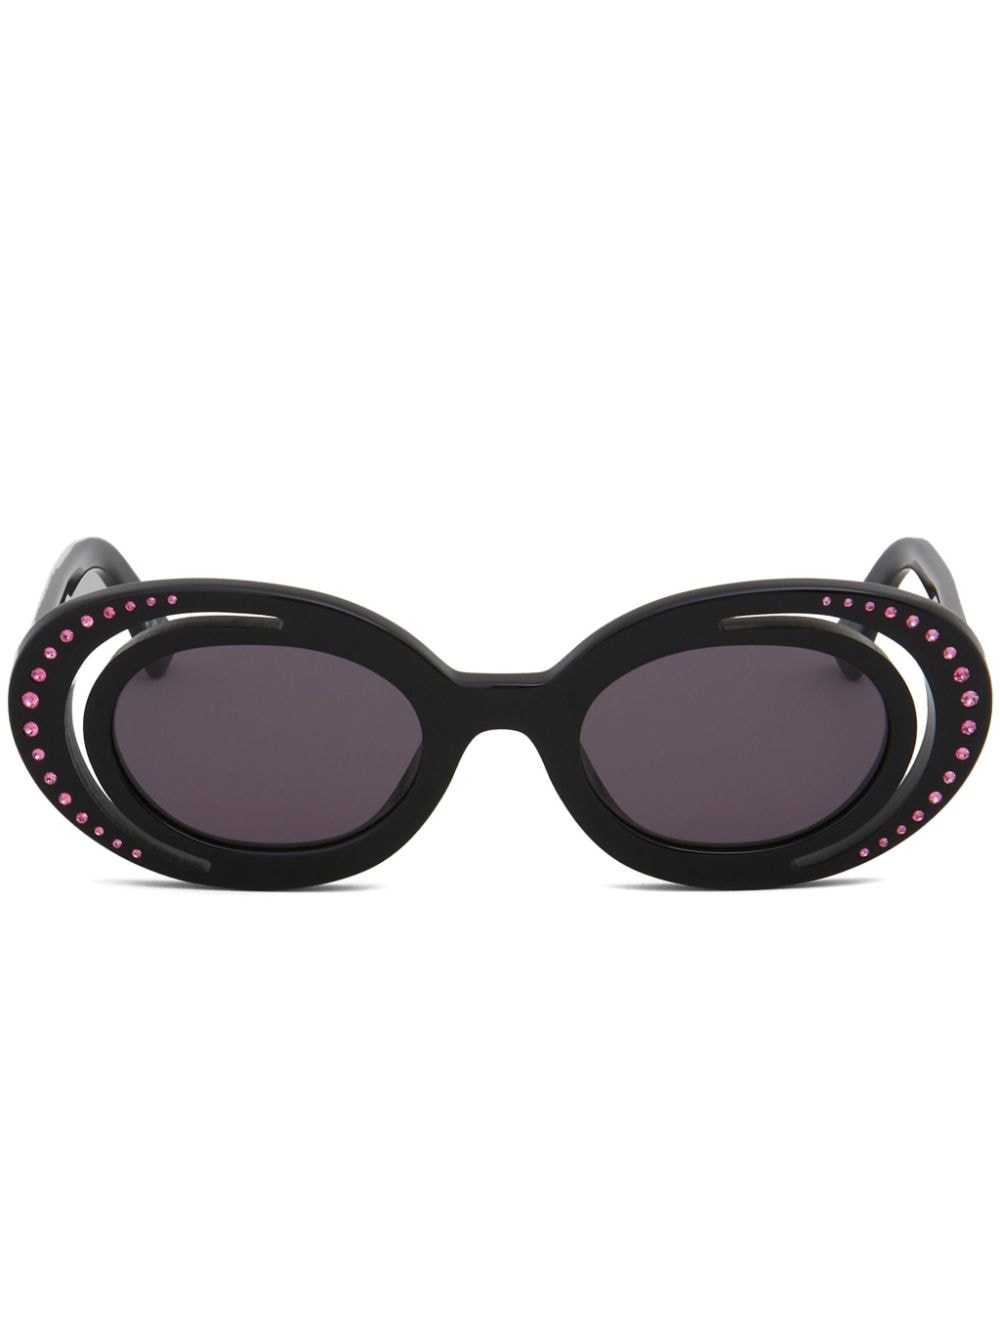 Marni Eyewear Zion Canyon Sonnenbrille mit ovalem Gestell - Schwarz von Marni Eyewear